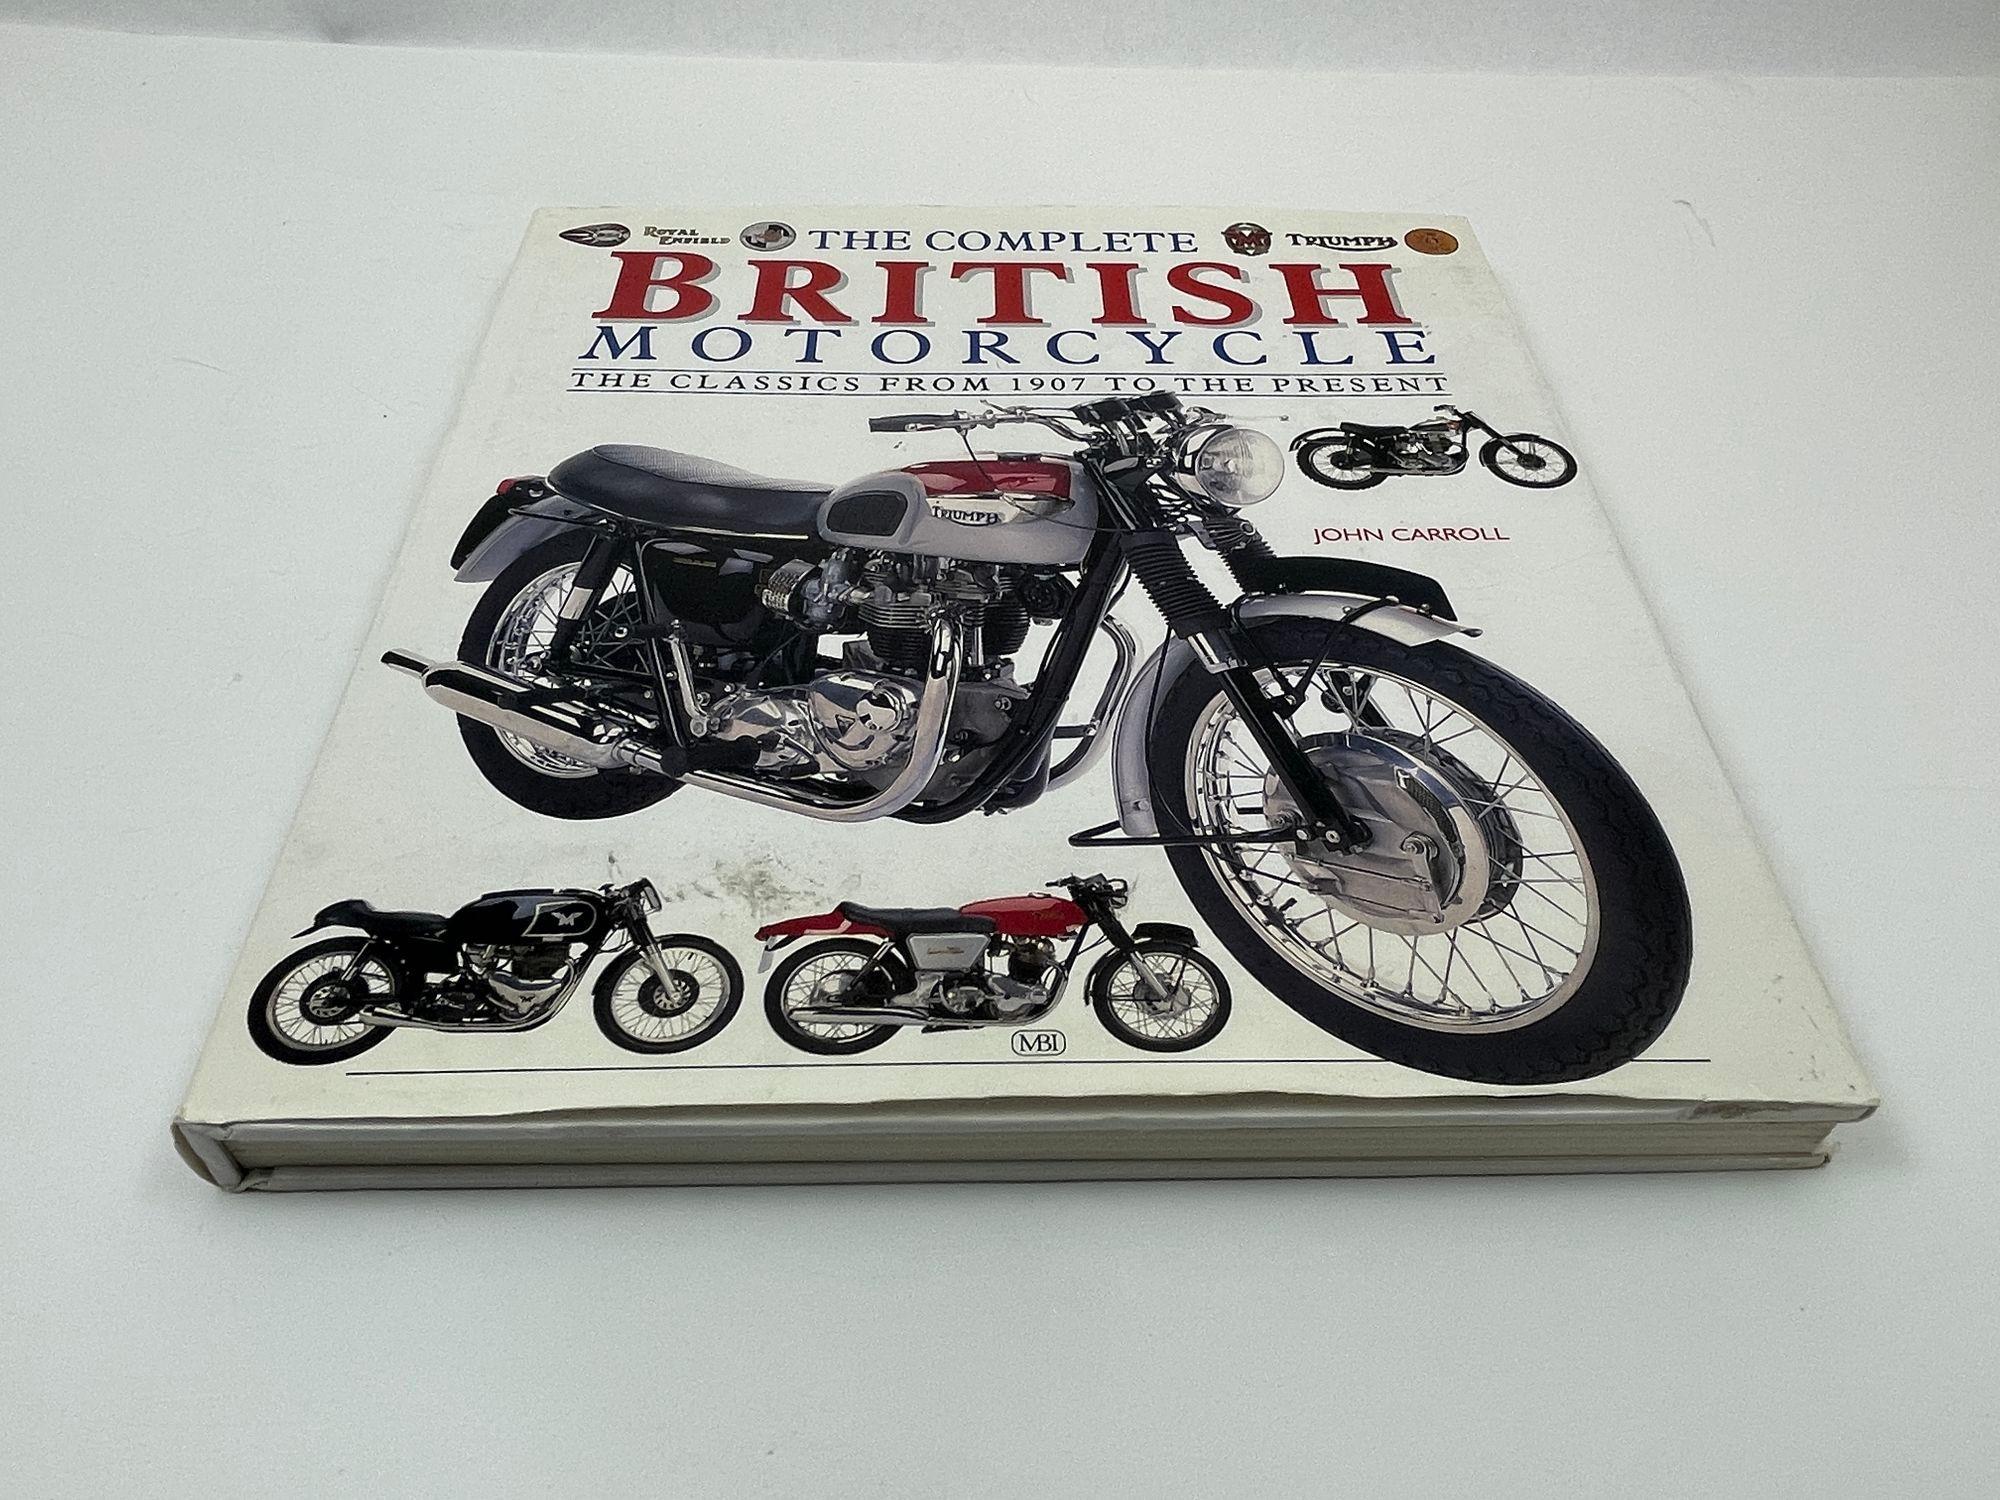 The Complete British Motorcycle The Classics From 1907 To The Present by J Carroll.Hardcover with dust jacket. Les motos britanniques attirent un public fanatique en raison de leur renommée mondiale. Ce volume célèbre les grandes motos de